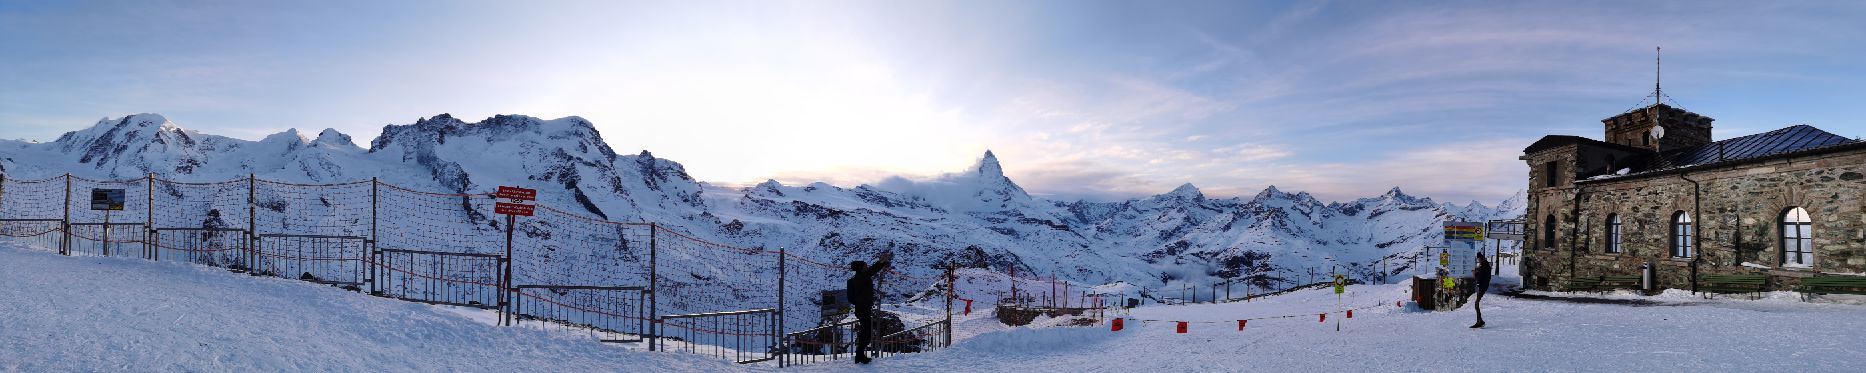 瑞士最美丽的雪景